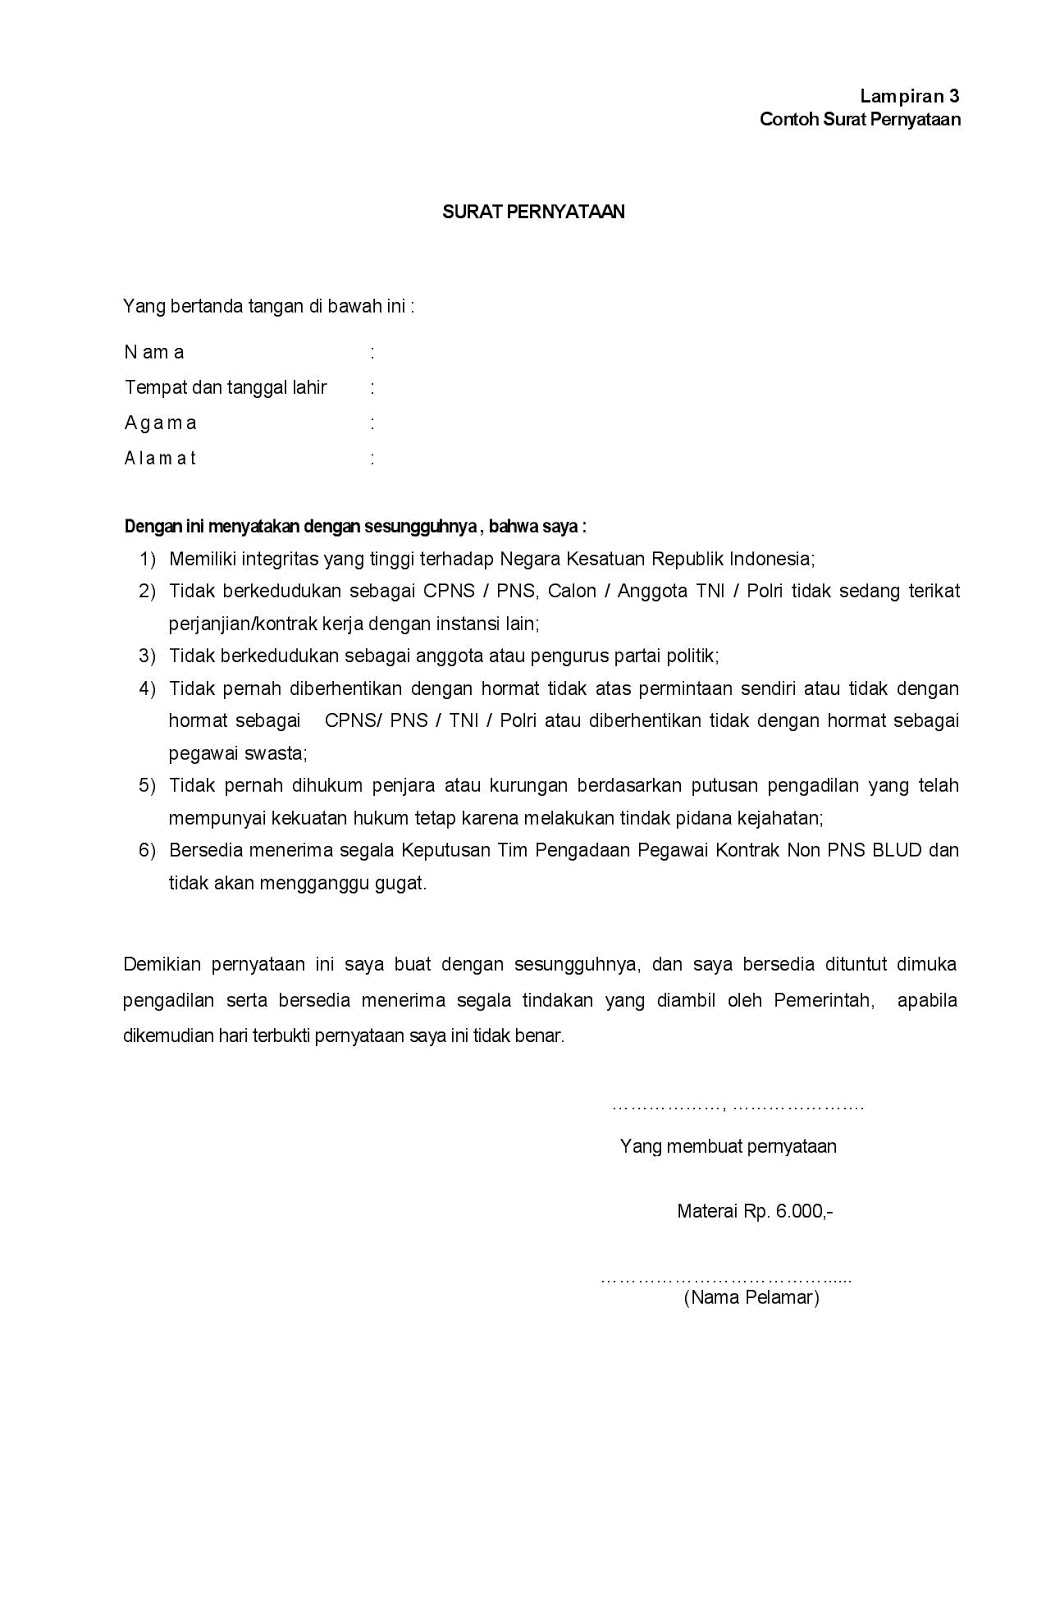 Contoh Surat Pernyataan Guru Non Pns Kontrak Kerja Bertemuco